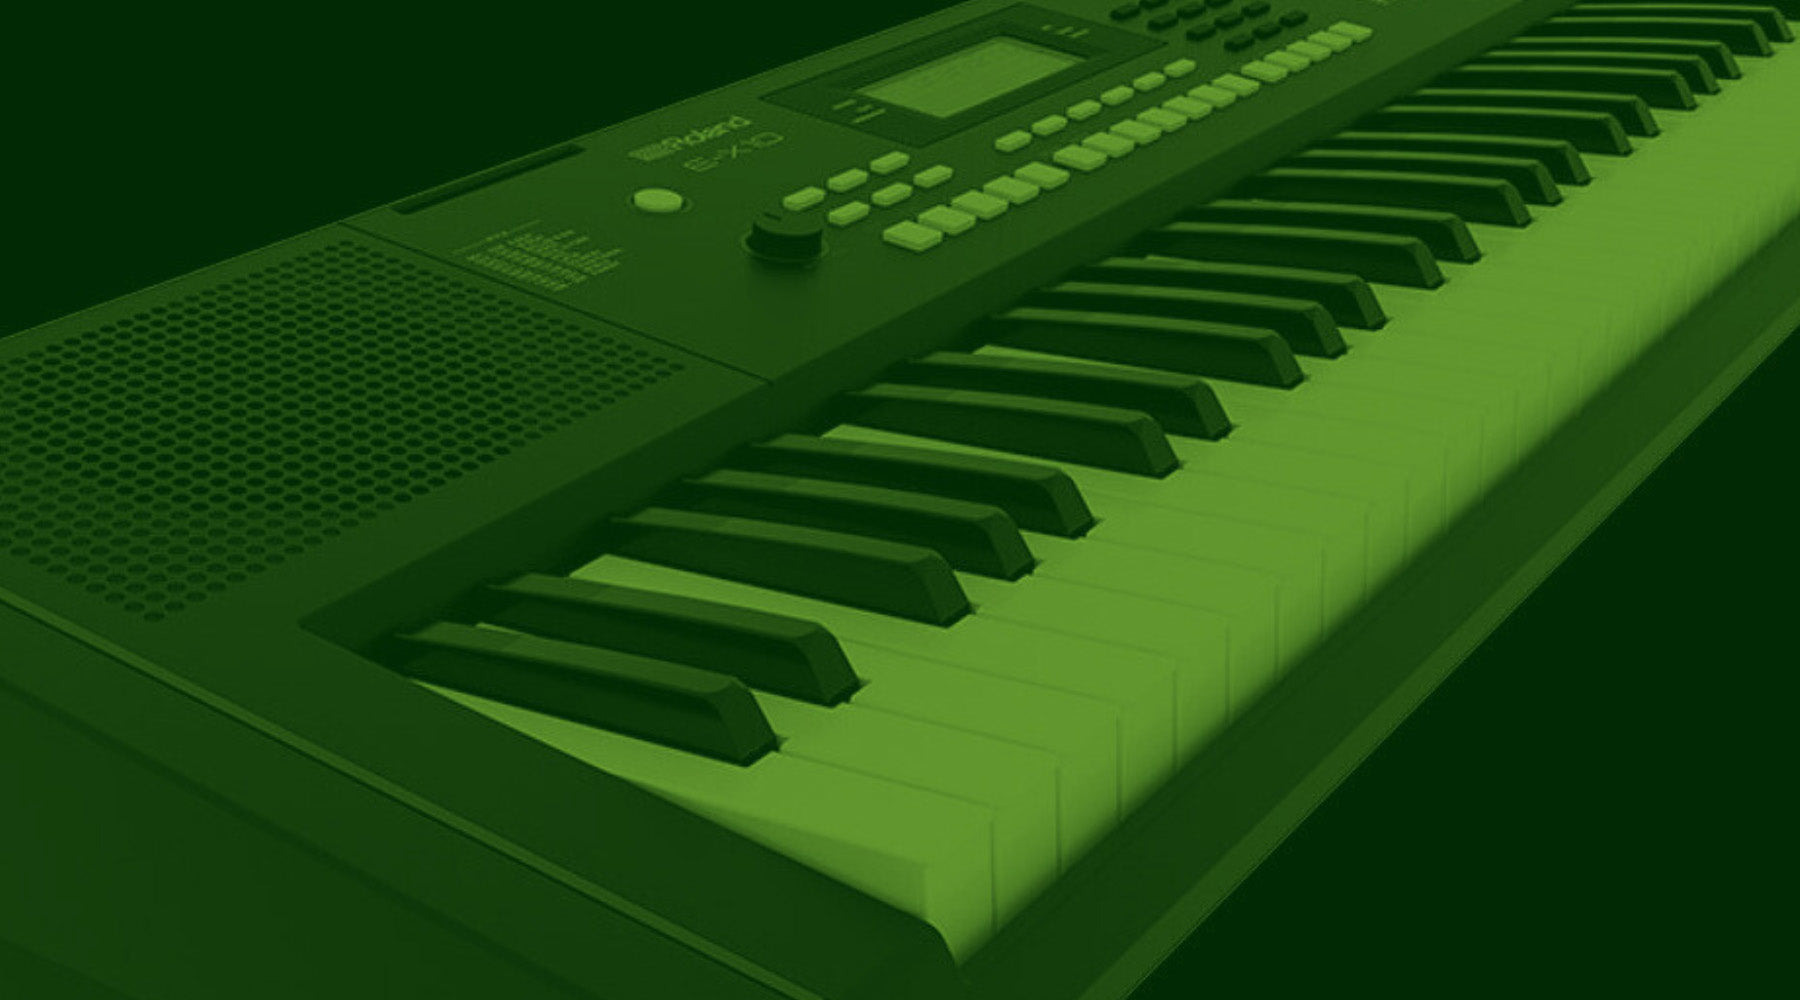 New Roland E-X10 arranger keyboard